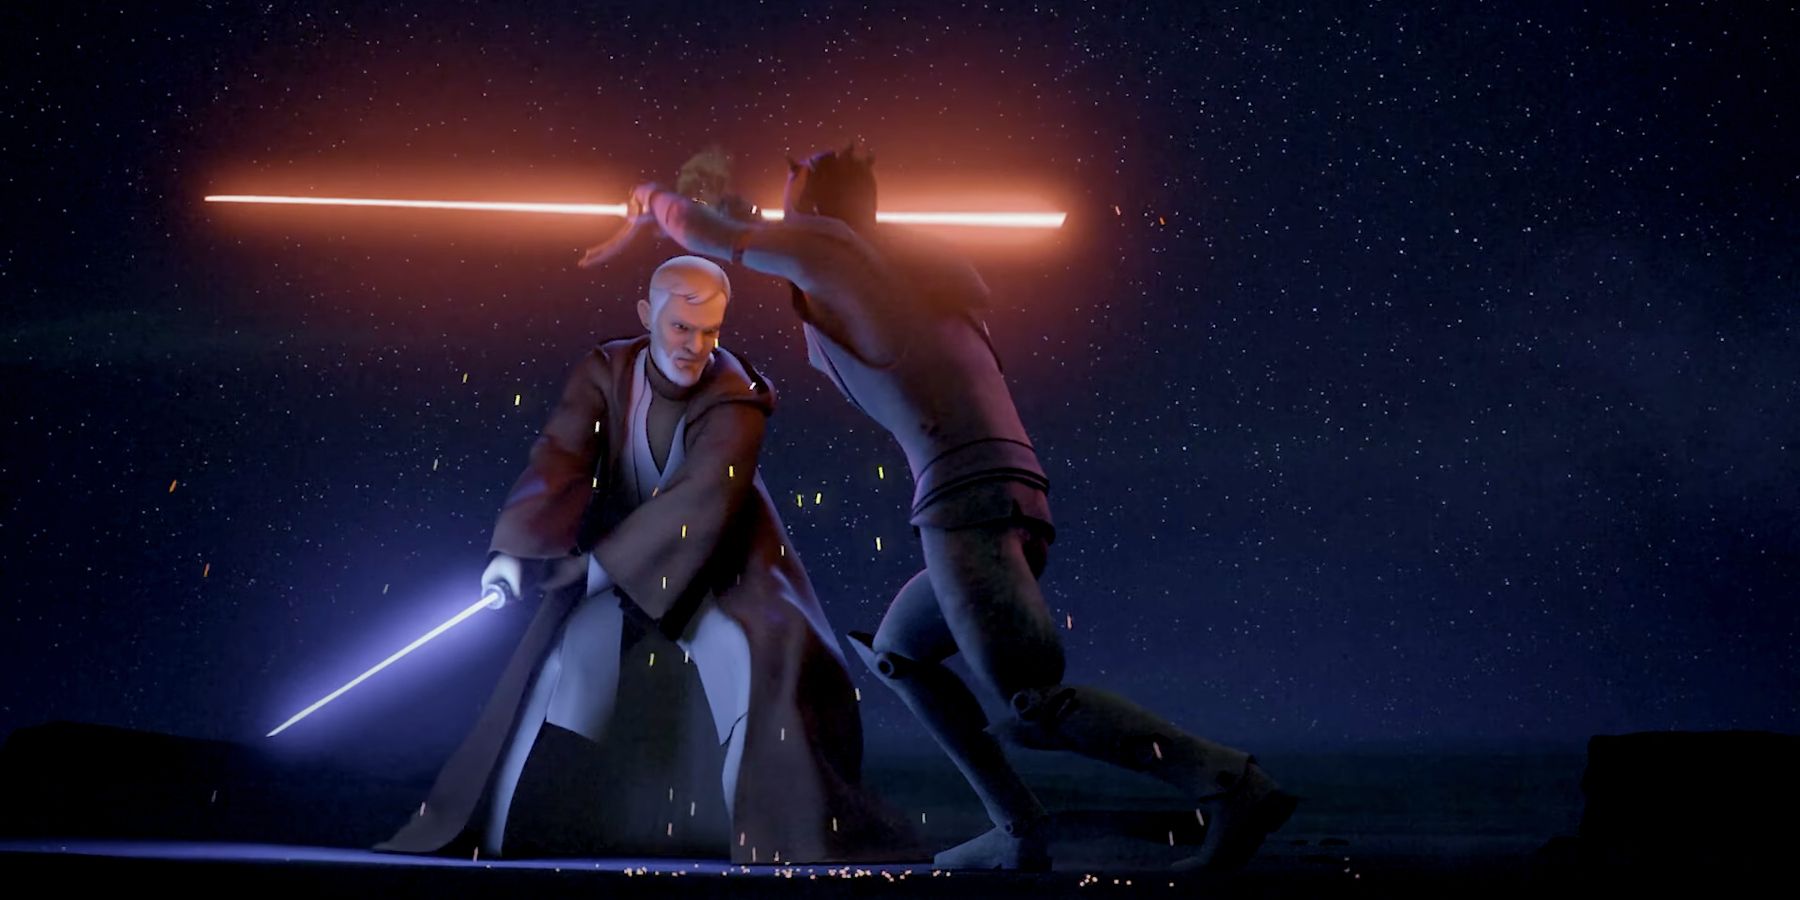 Obi Wan Kenobi defeating Maul in Star Wars Rebels